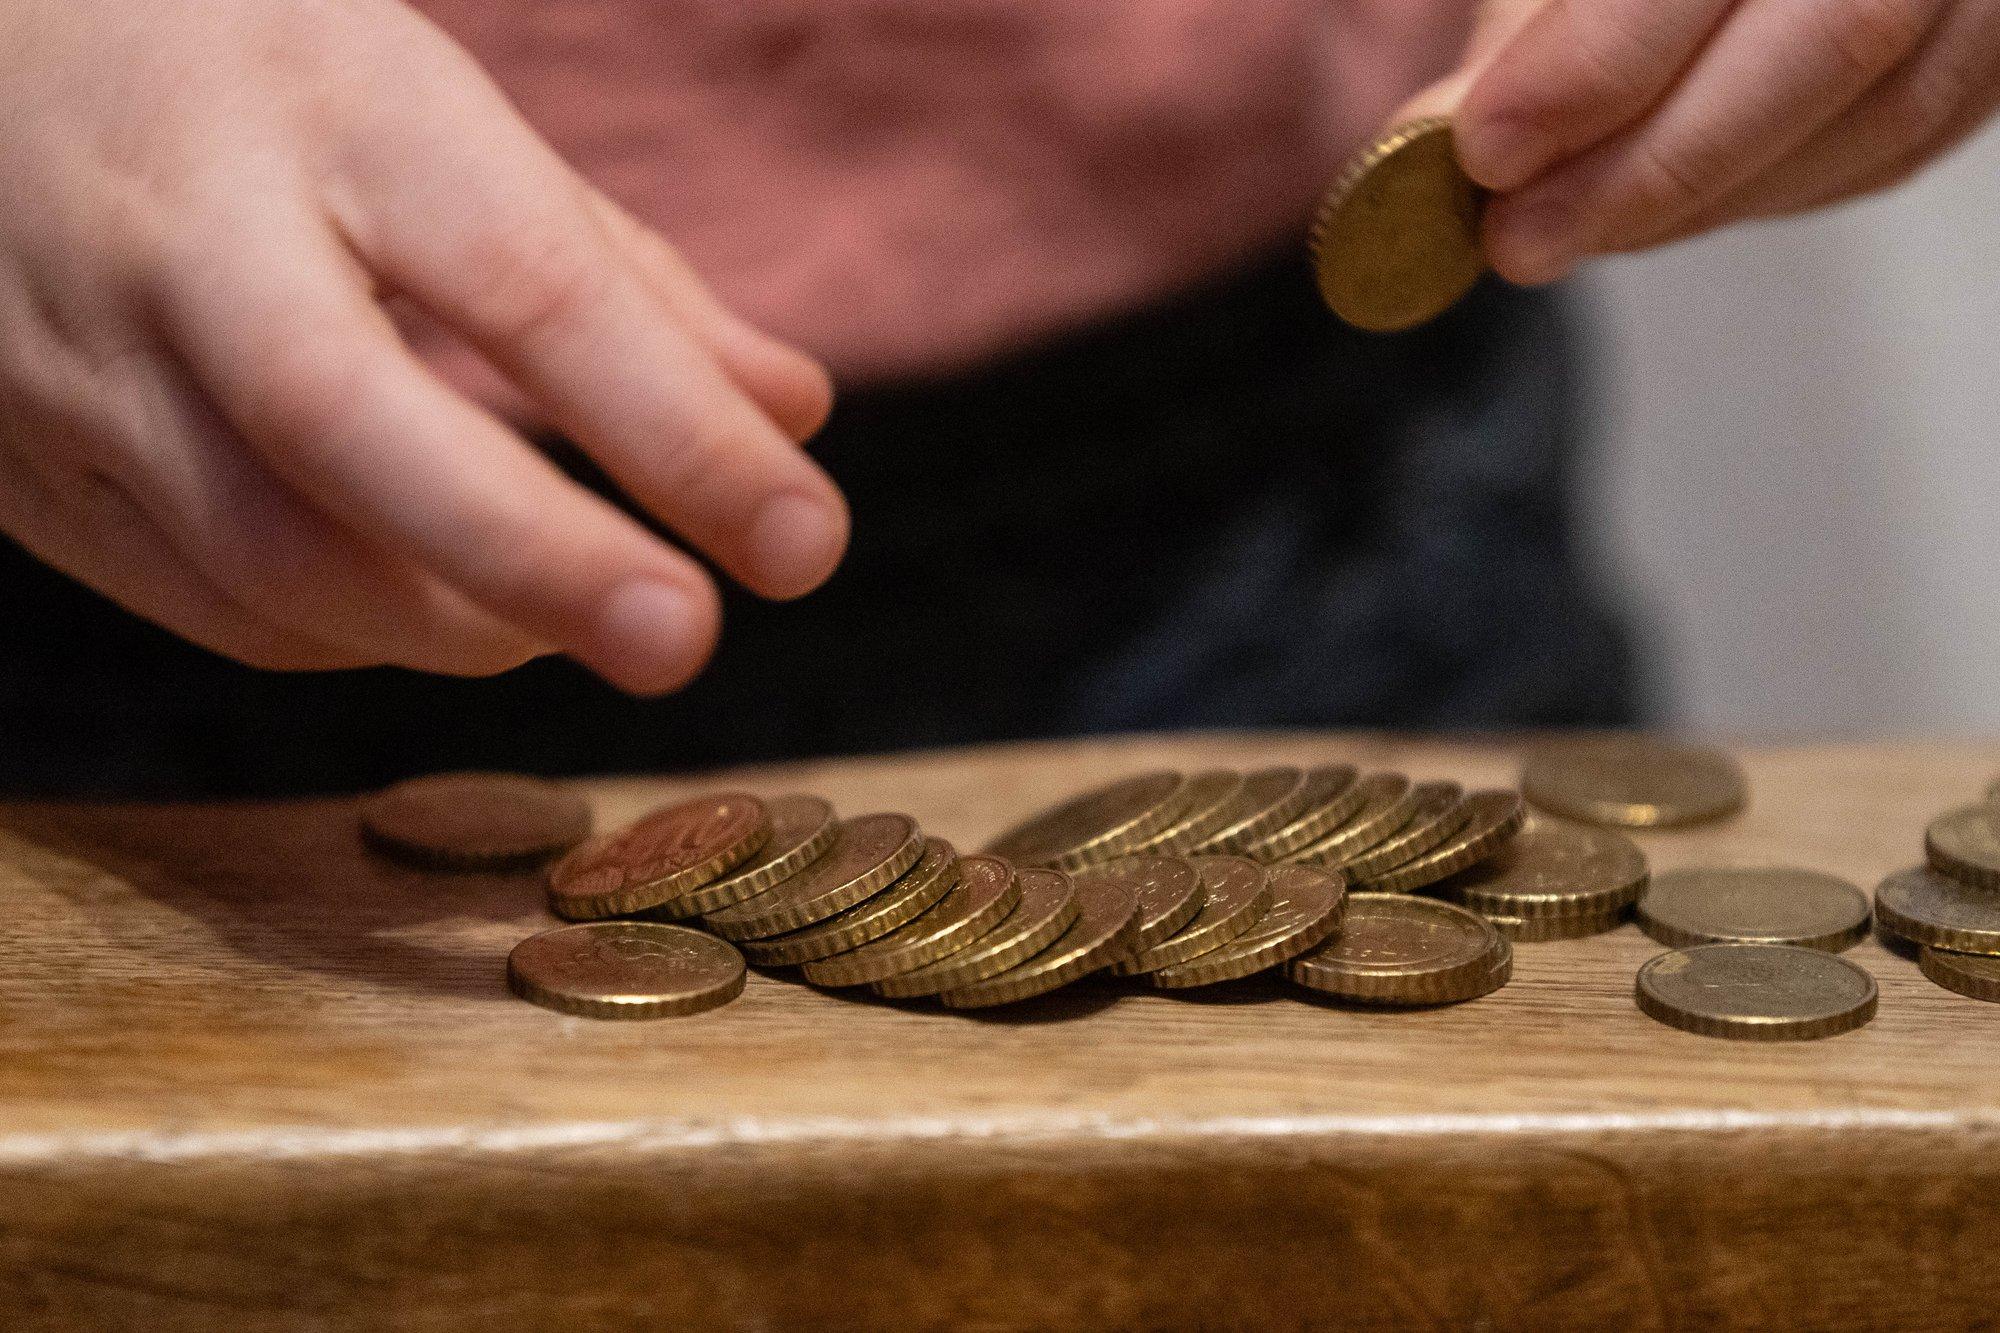 Финансовая комиссия направила на второе чтение законопроект о расчете мелкими монетами